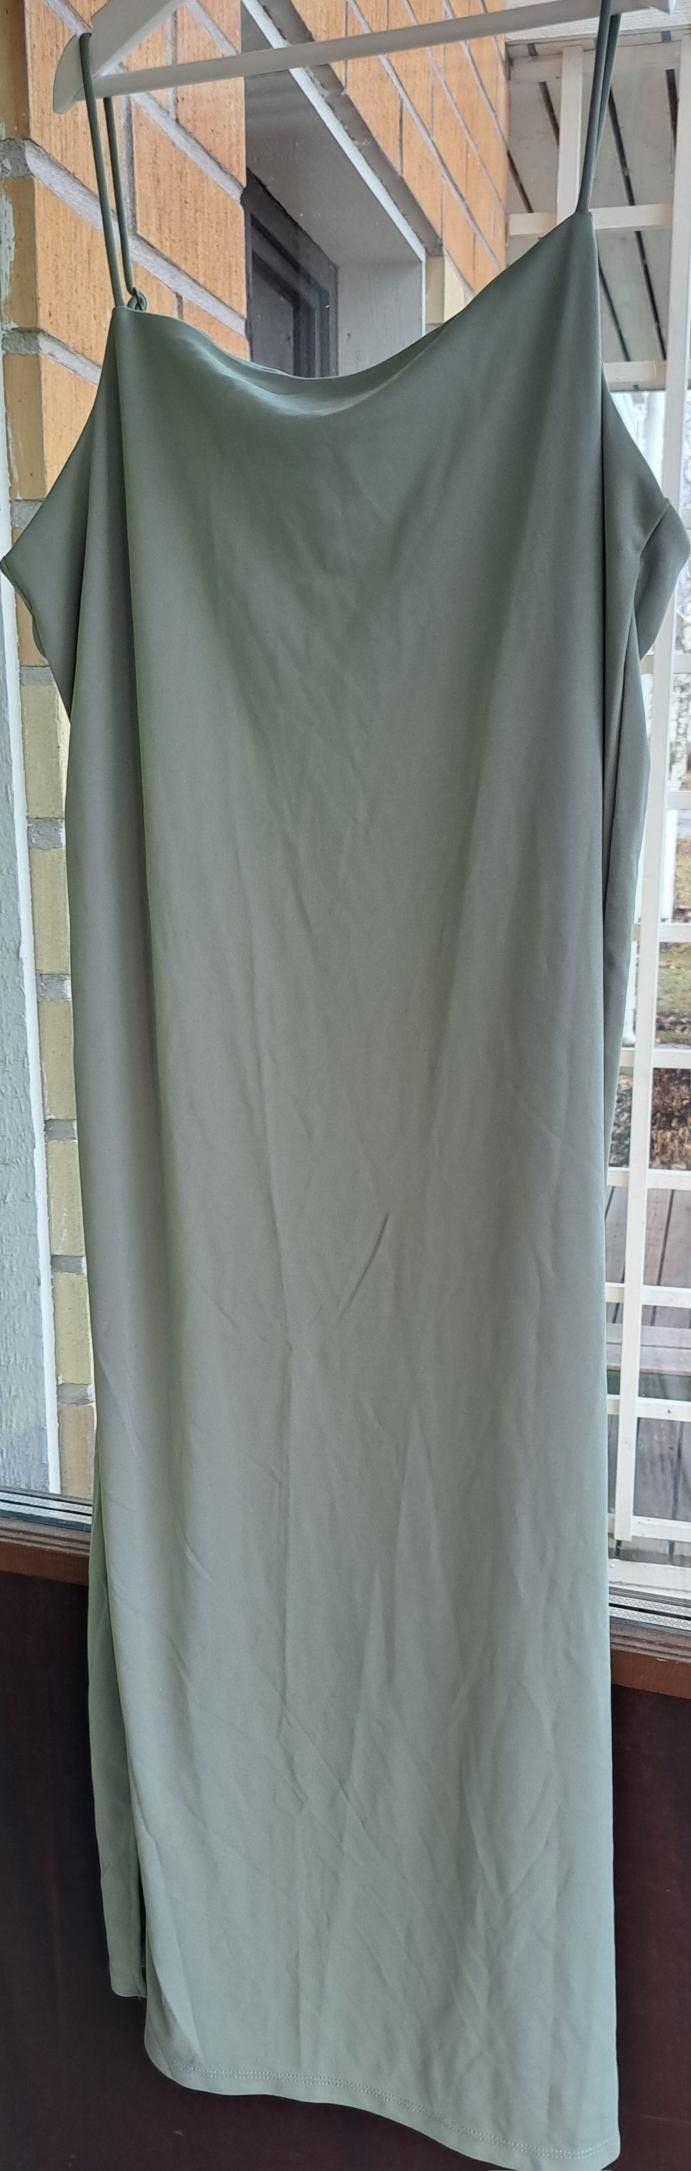 H&M Vaaleanvihreä pitkä ohut mekko halkiolla